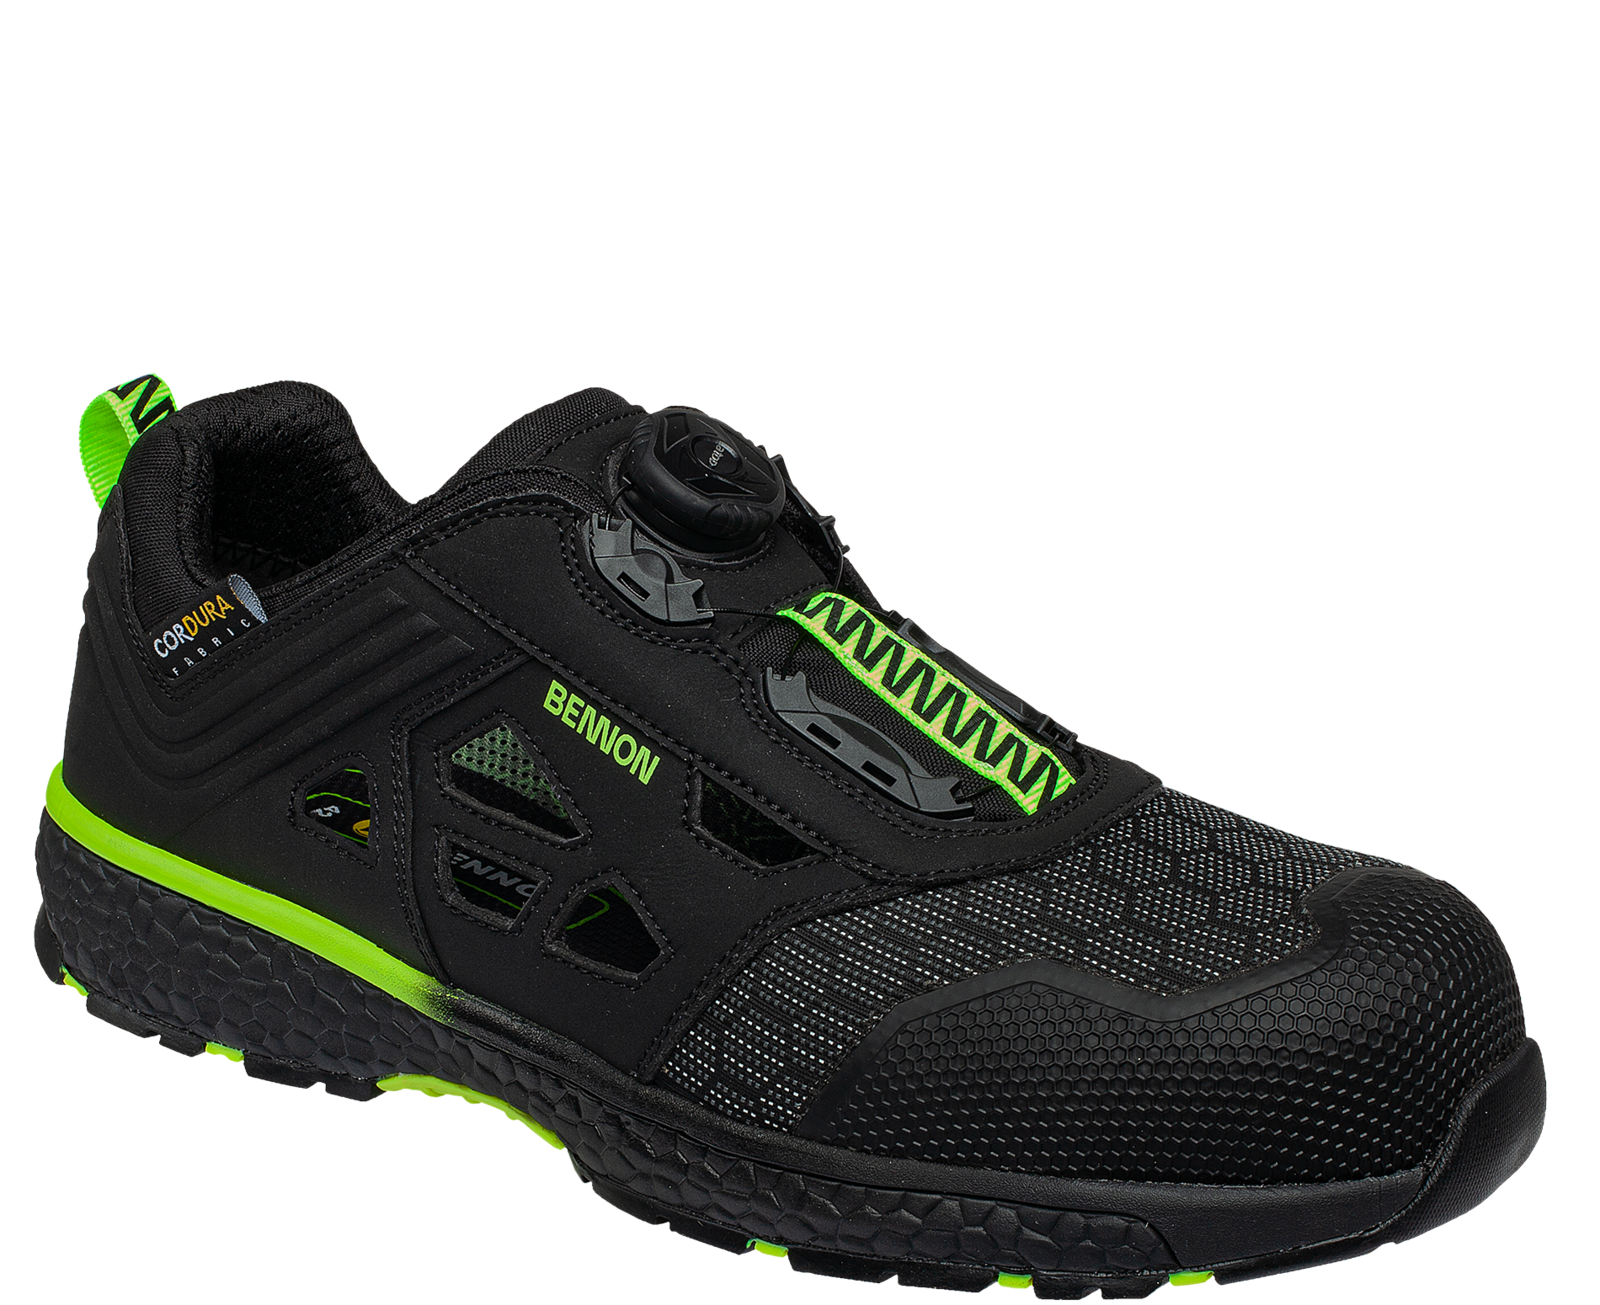 Bezpečnostné sandále Bennon Predator S1P ESD - veľkosť: 36, farba: čierna/zelená